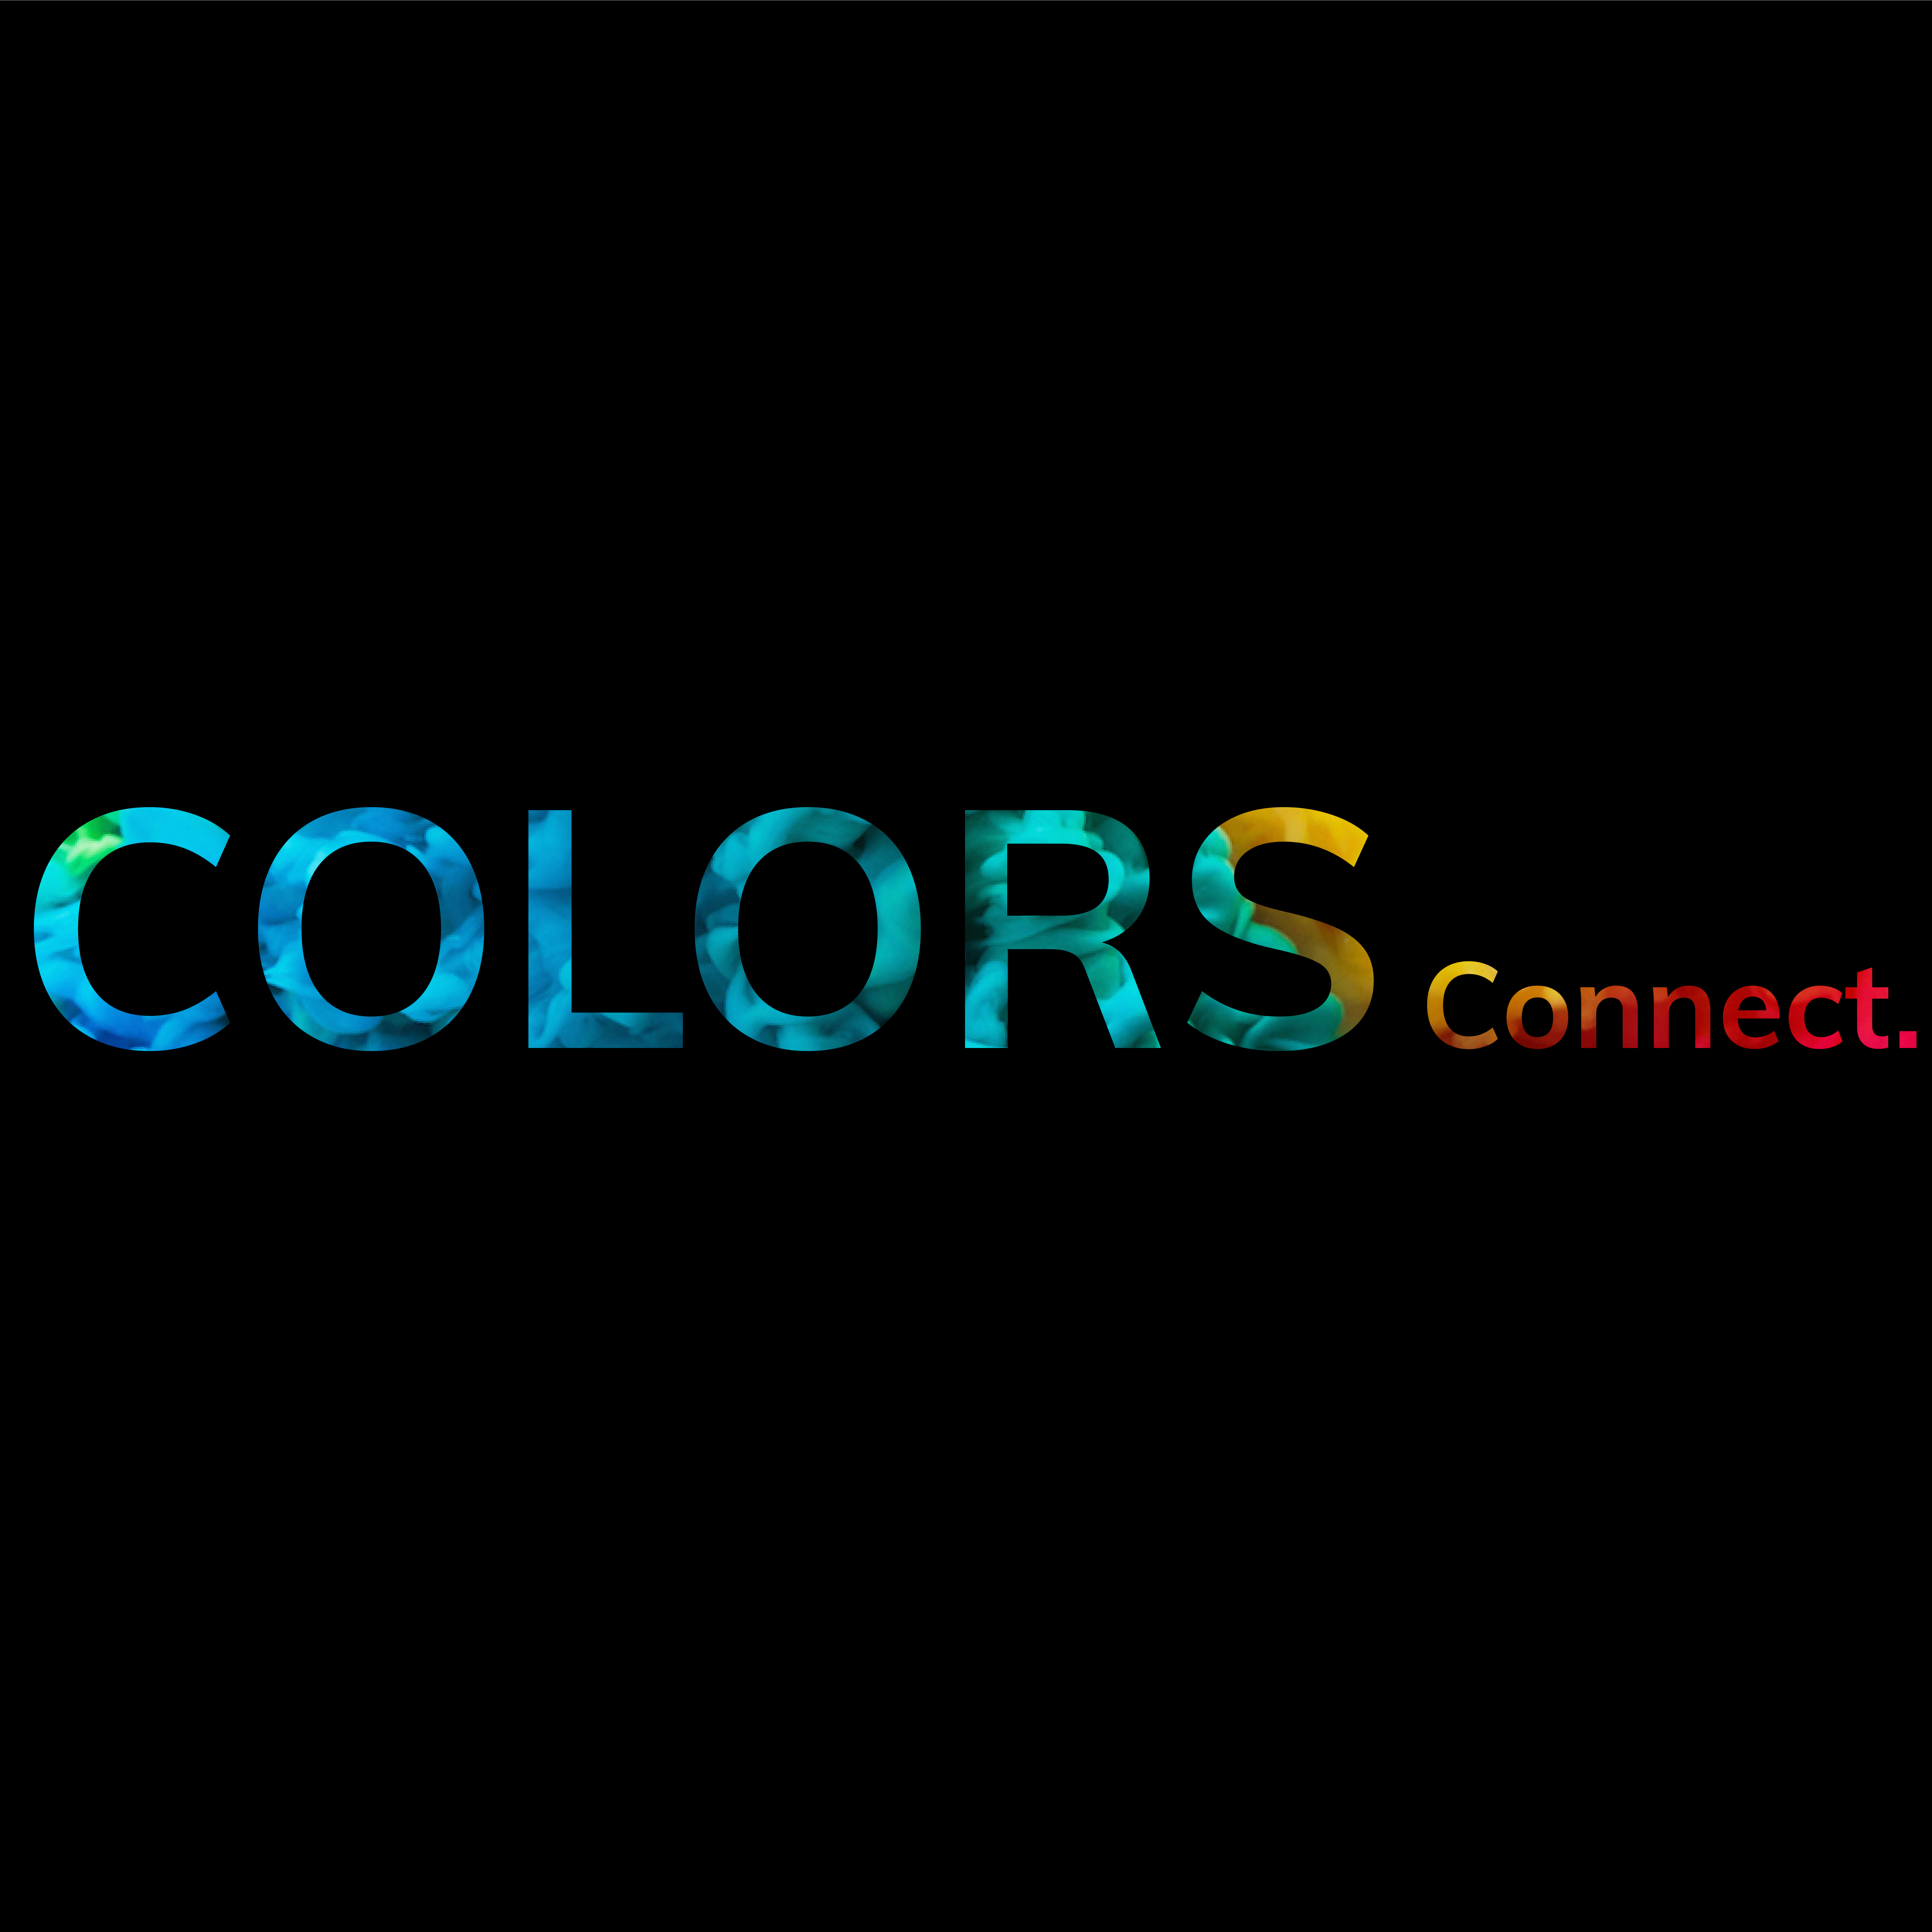 Colors connect